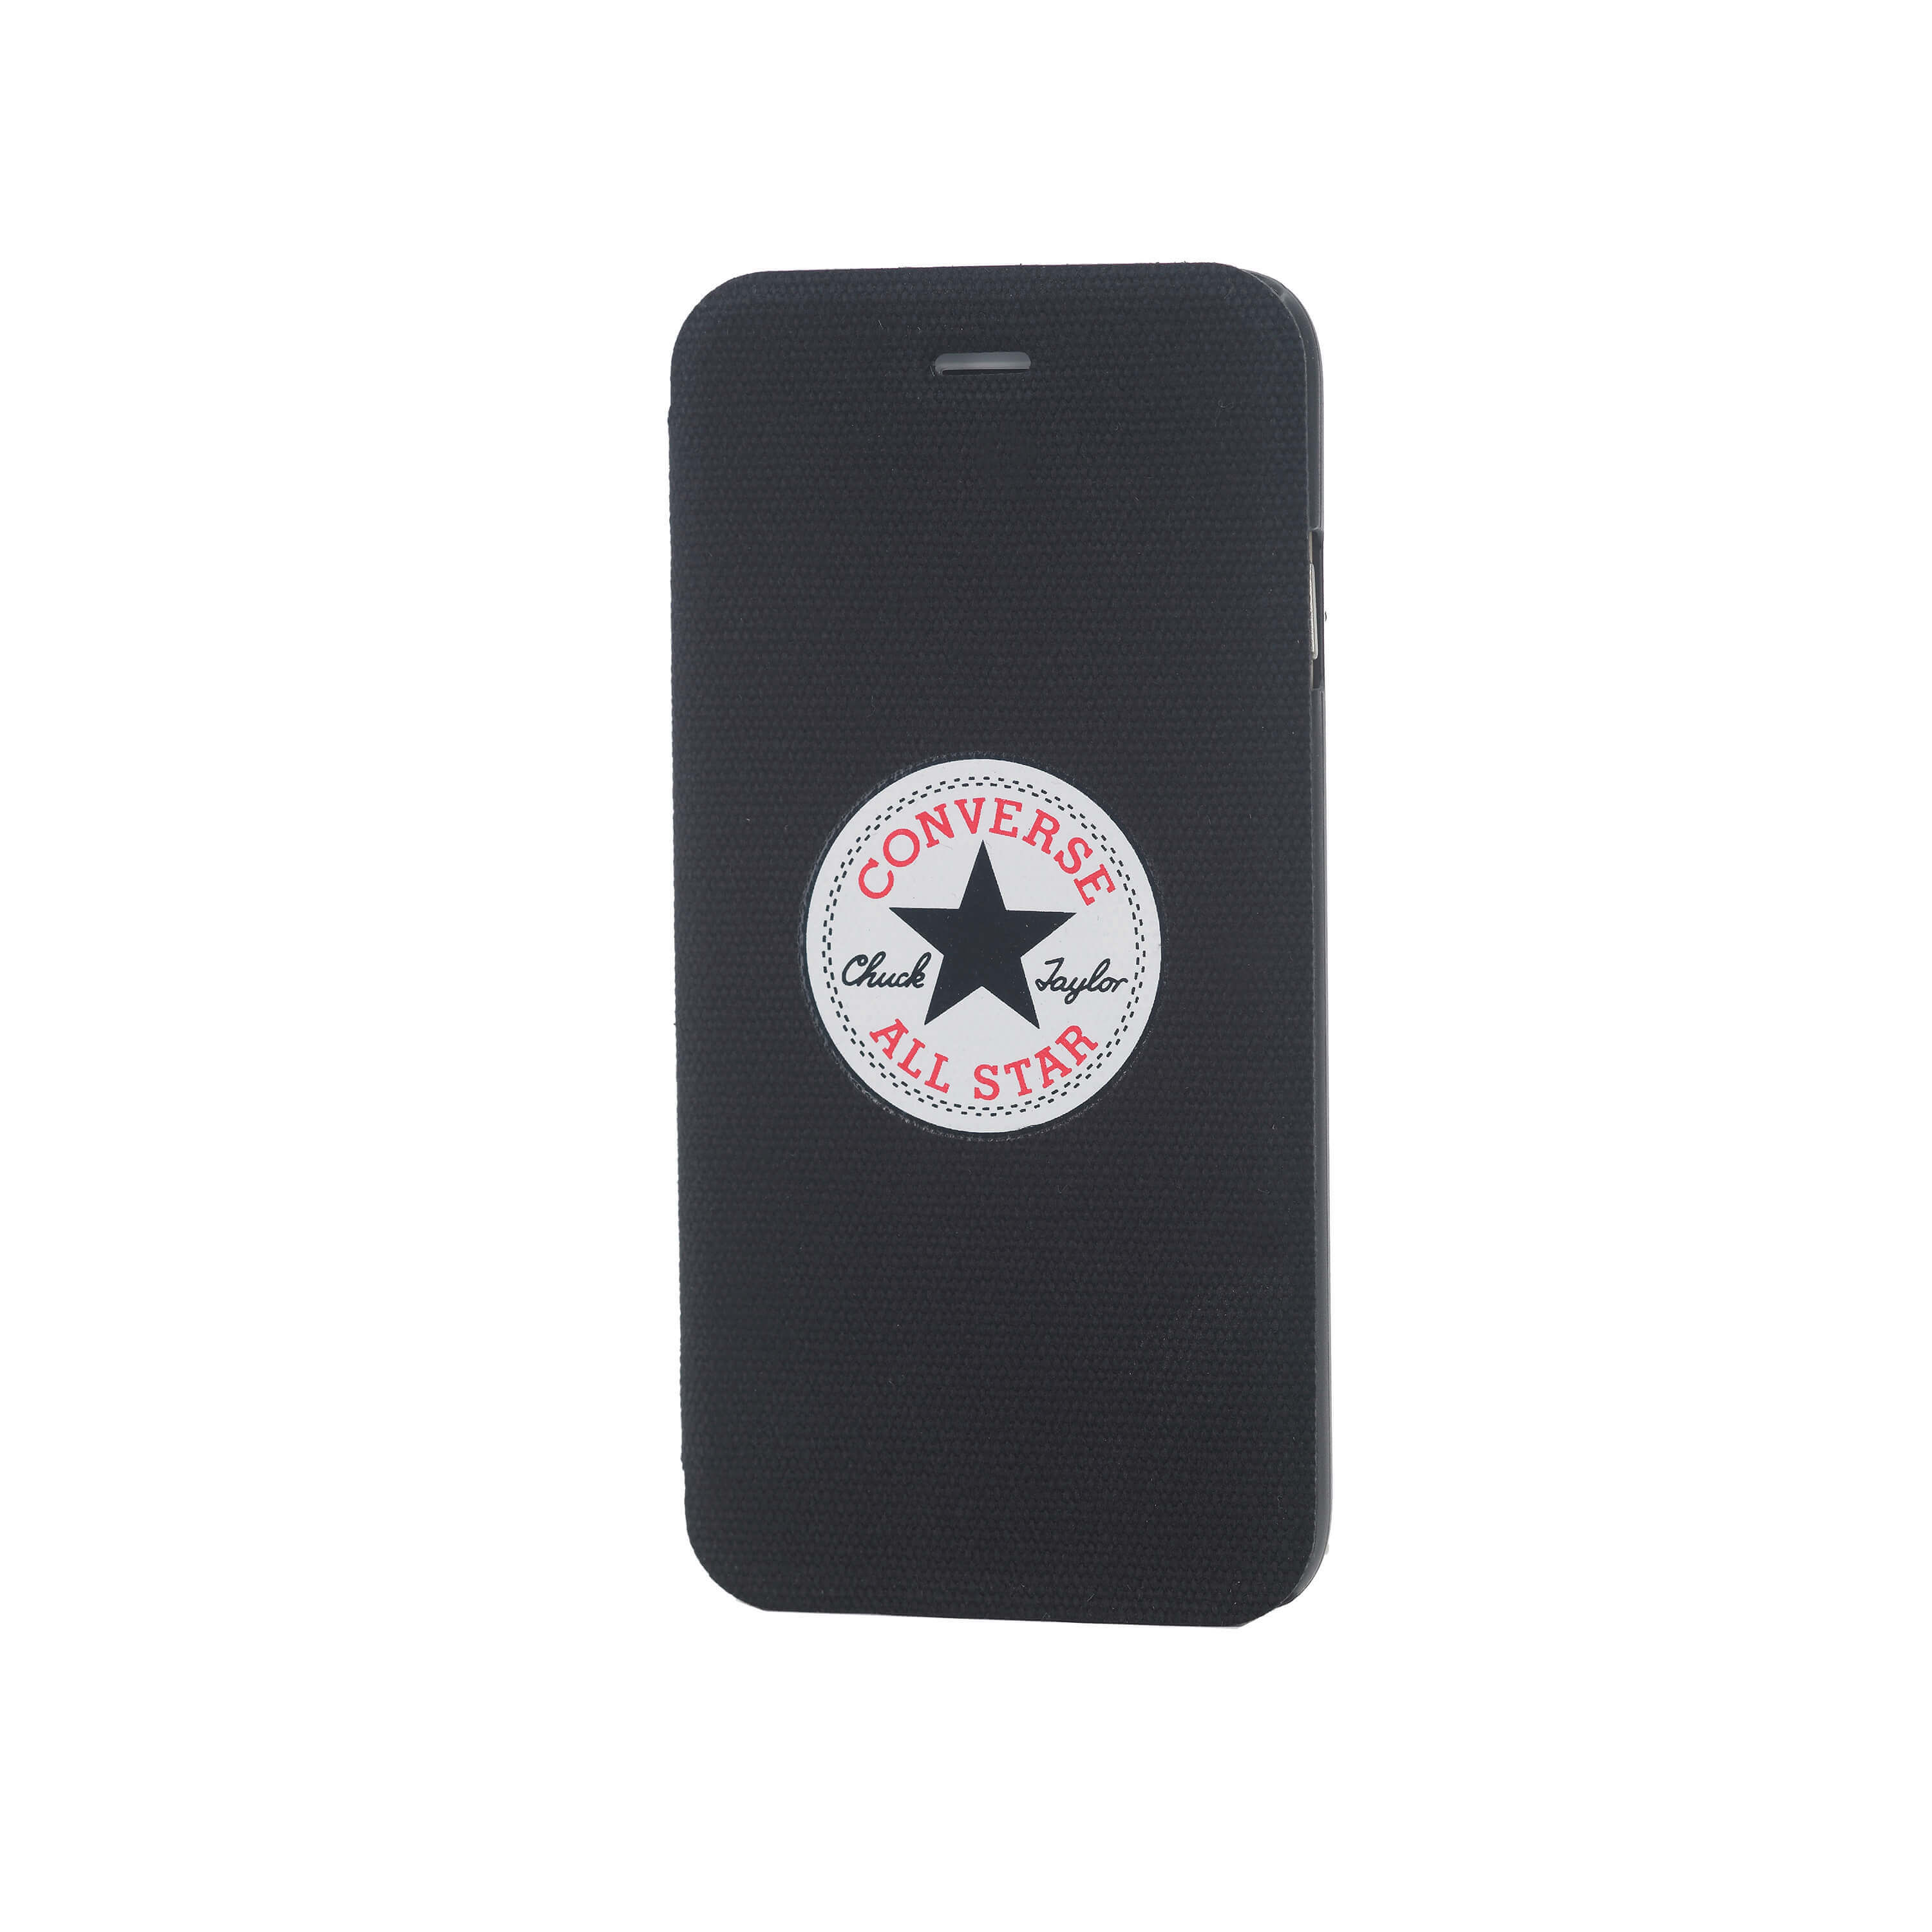 Wallet Case Black - iPhone 6 Plus